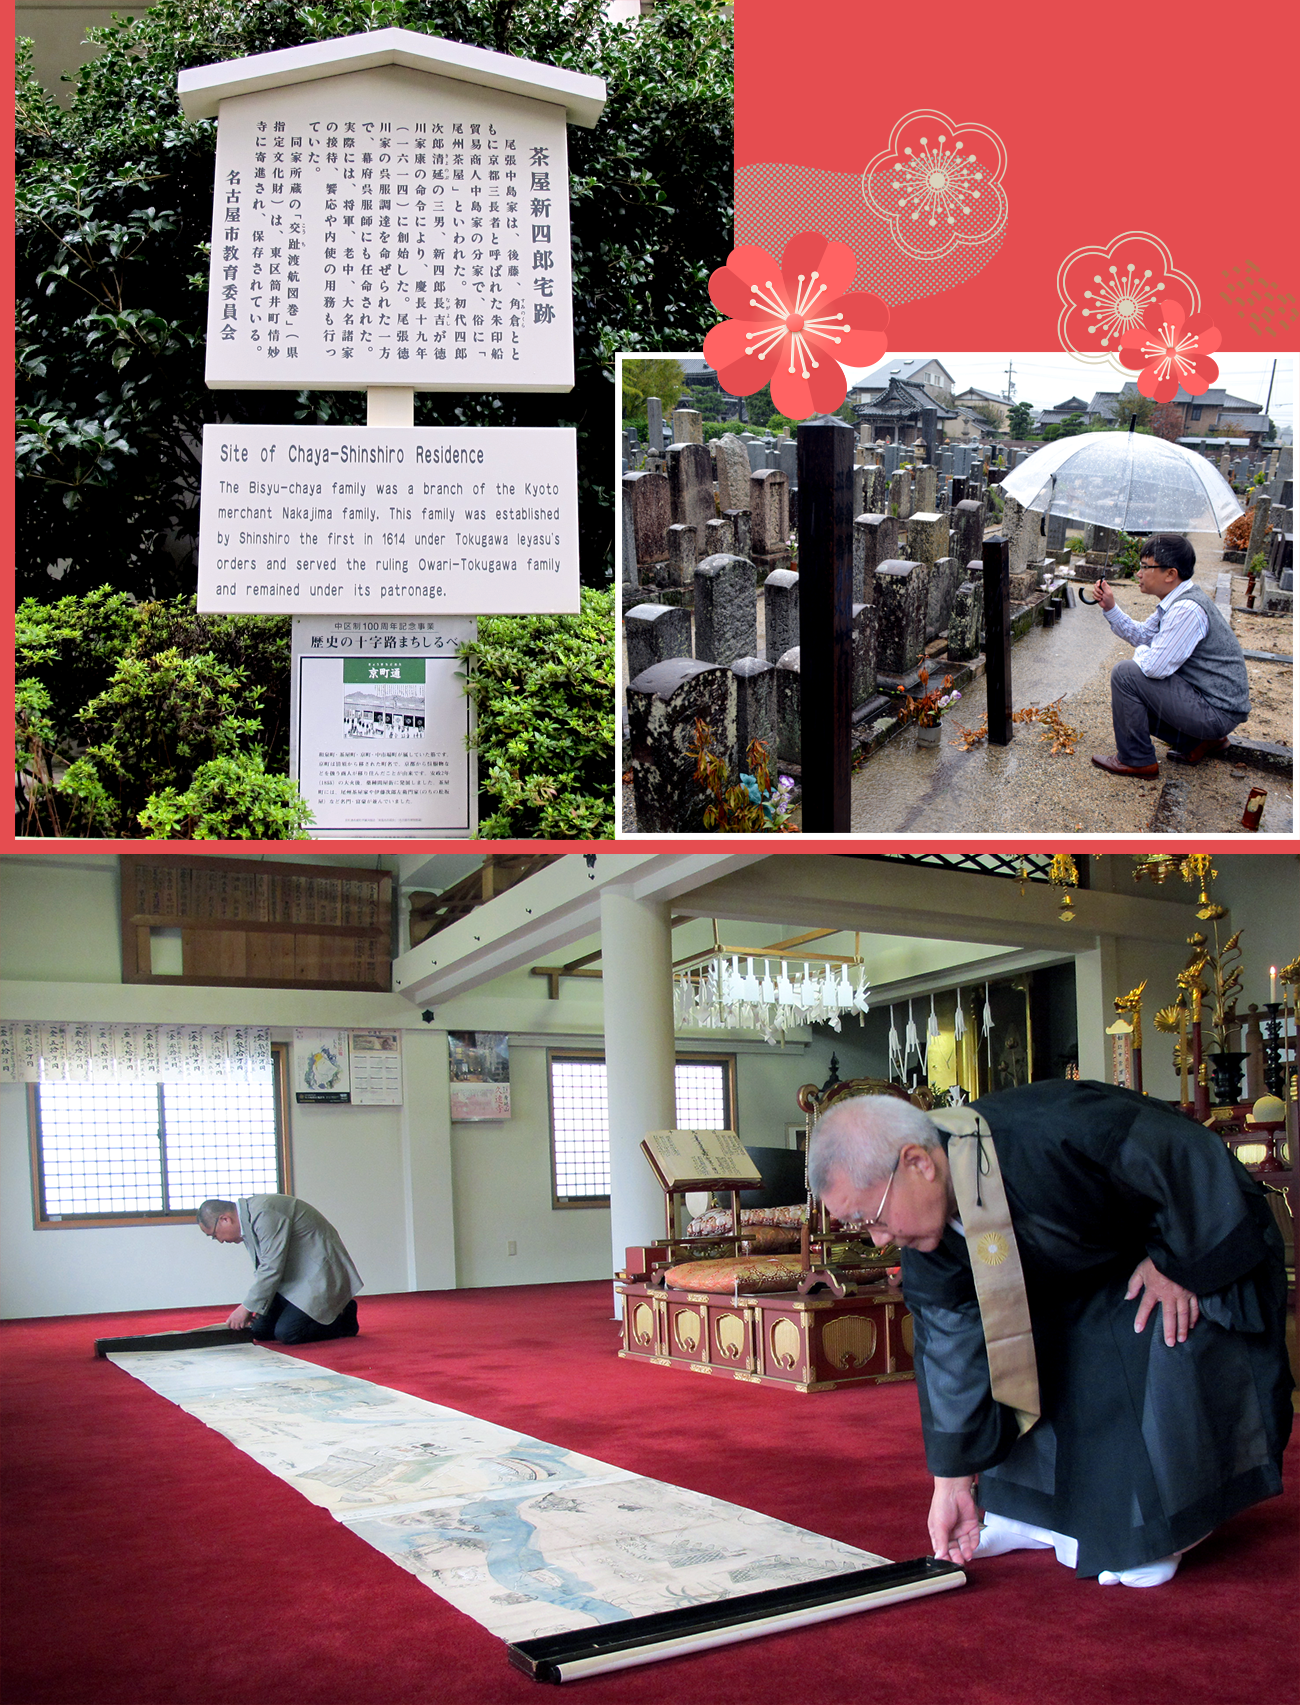 Viếng thăm ngôi mộ của hào thương Chaya Shinroku trong khuôn viên chùa Raikoo-ji và xem bức tranh Chaya Shinroku Kochi toko zukan đang lưu giữ tại chùa